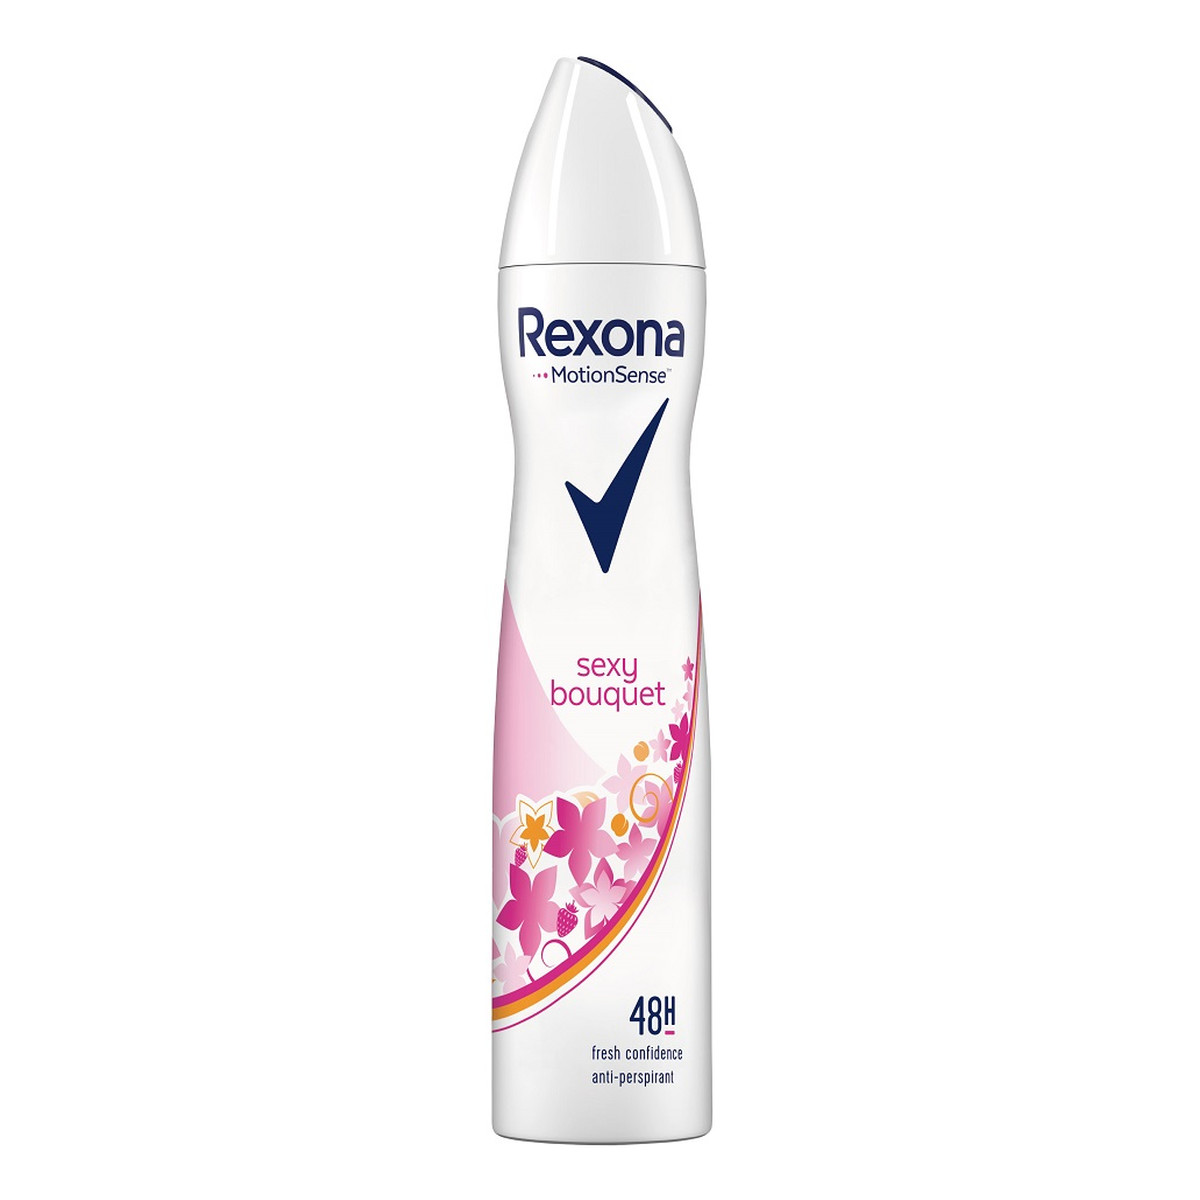 Rexona Sexy bouquet anti-perspirant 48h antyperspirant spray 250ml